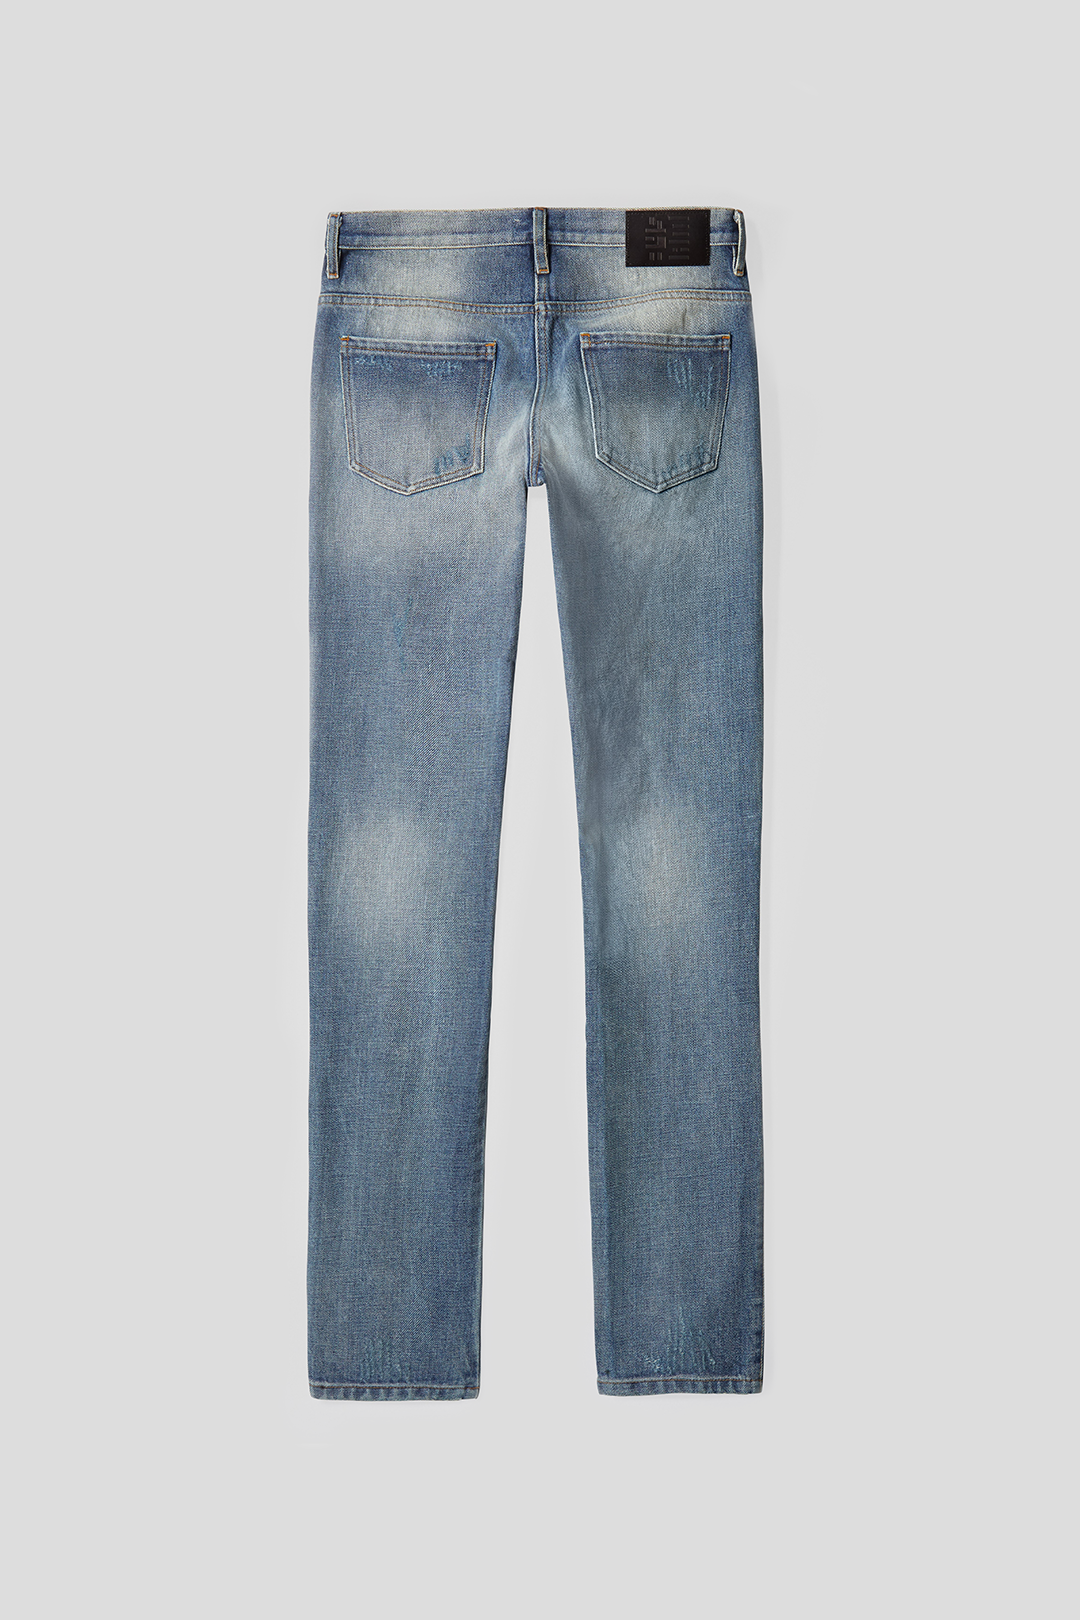 Vanish Japanese Denim Jeans